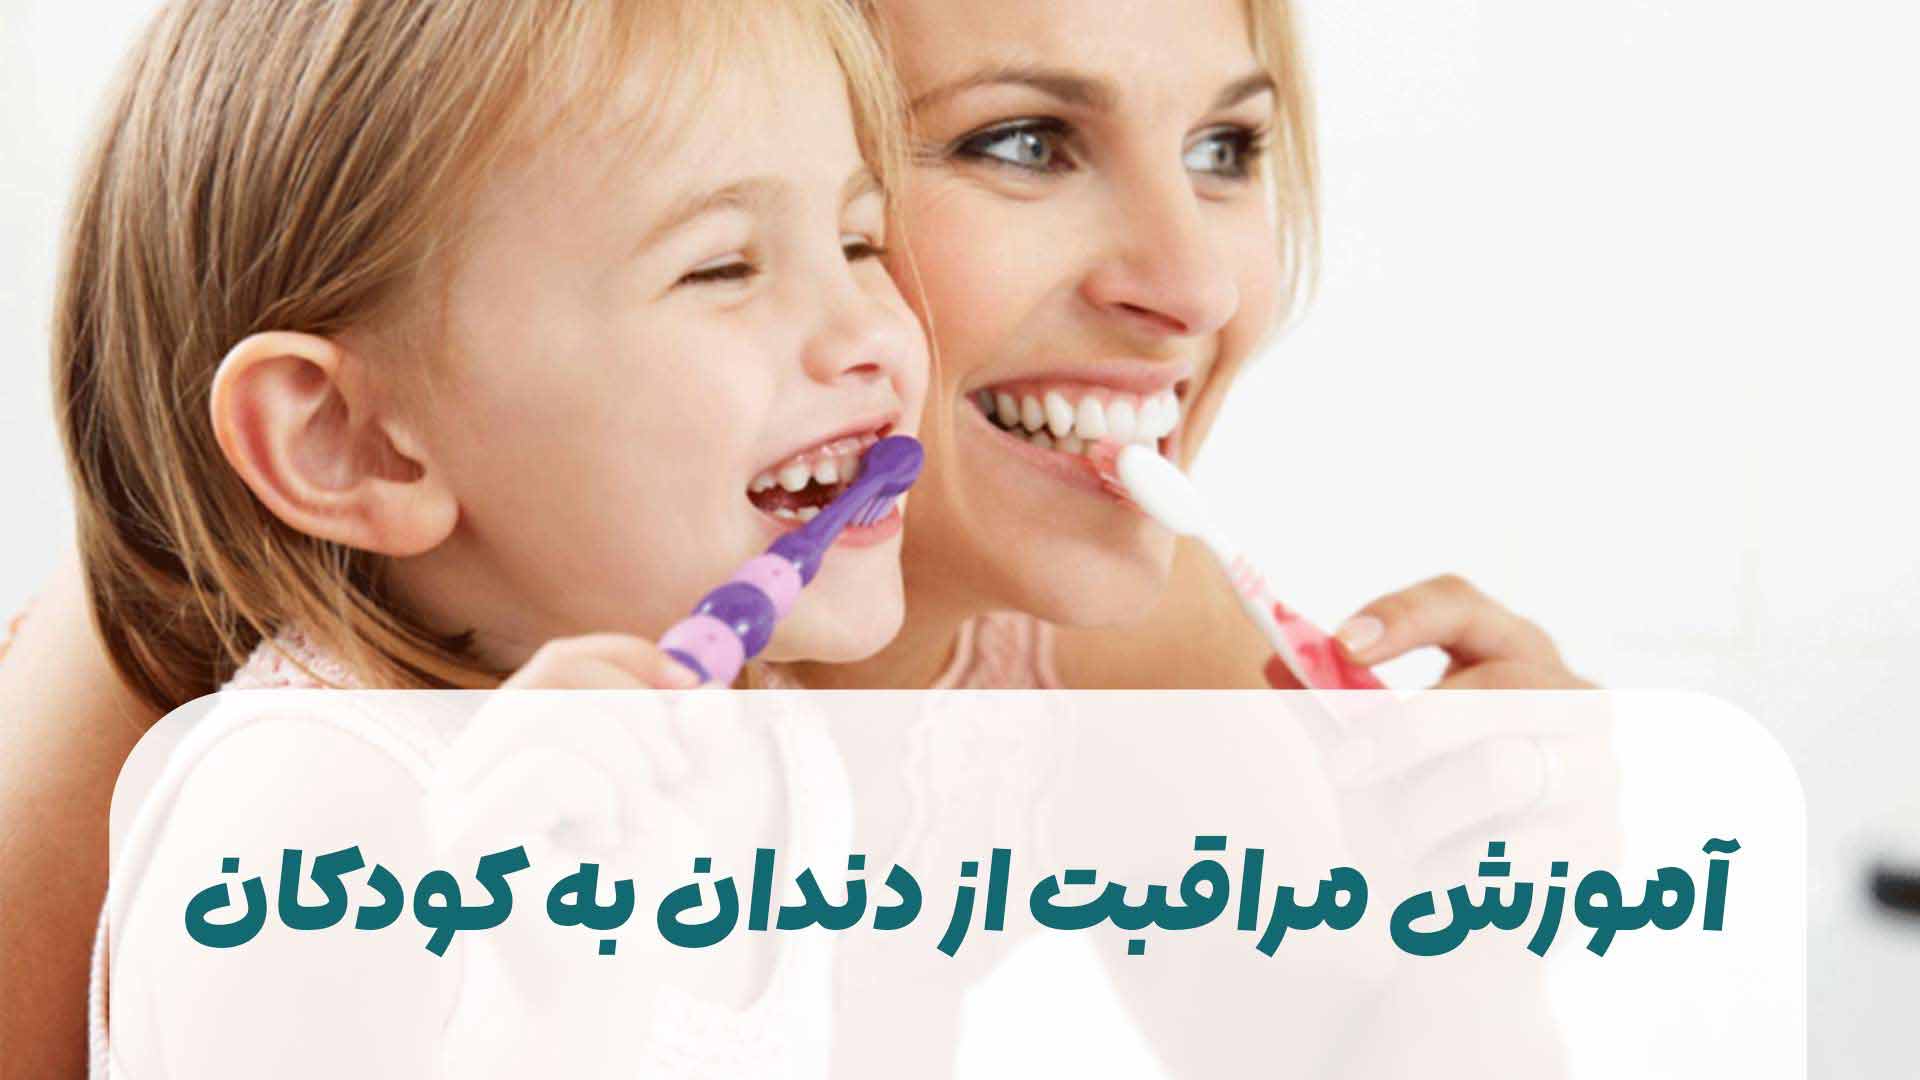 آموزش مراقبت از دندان به کودکان